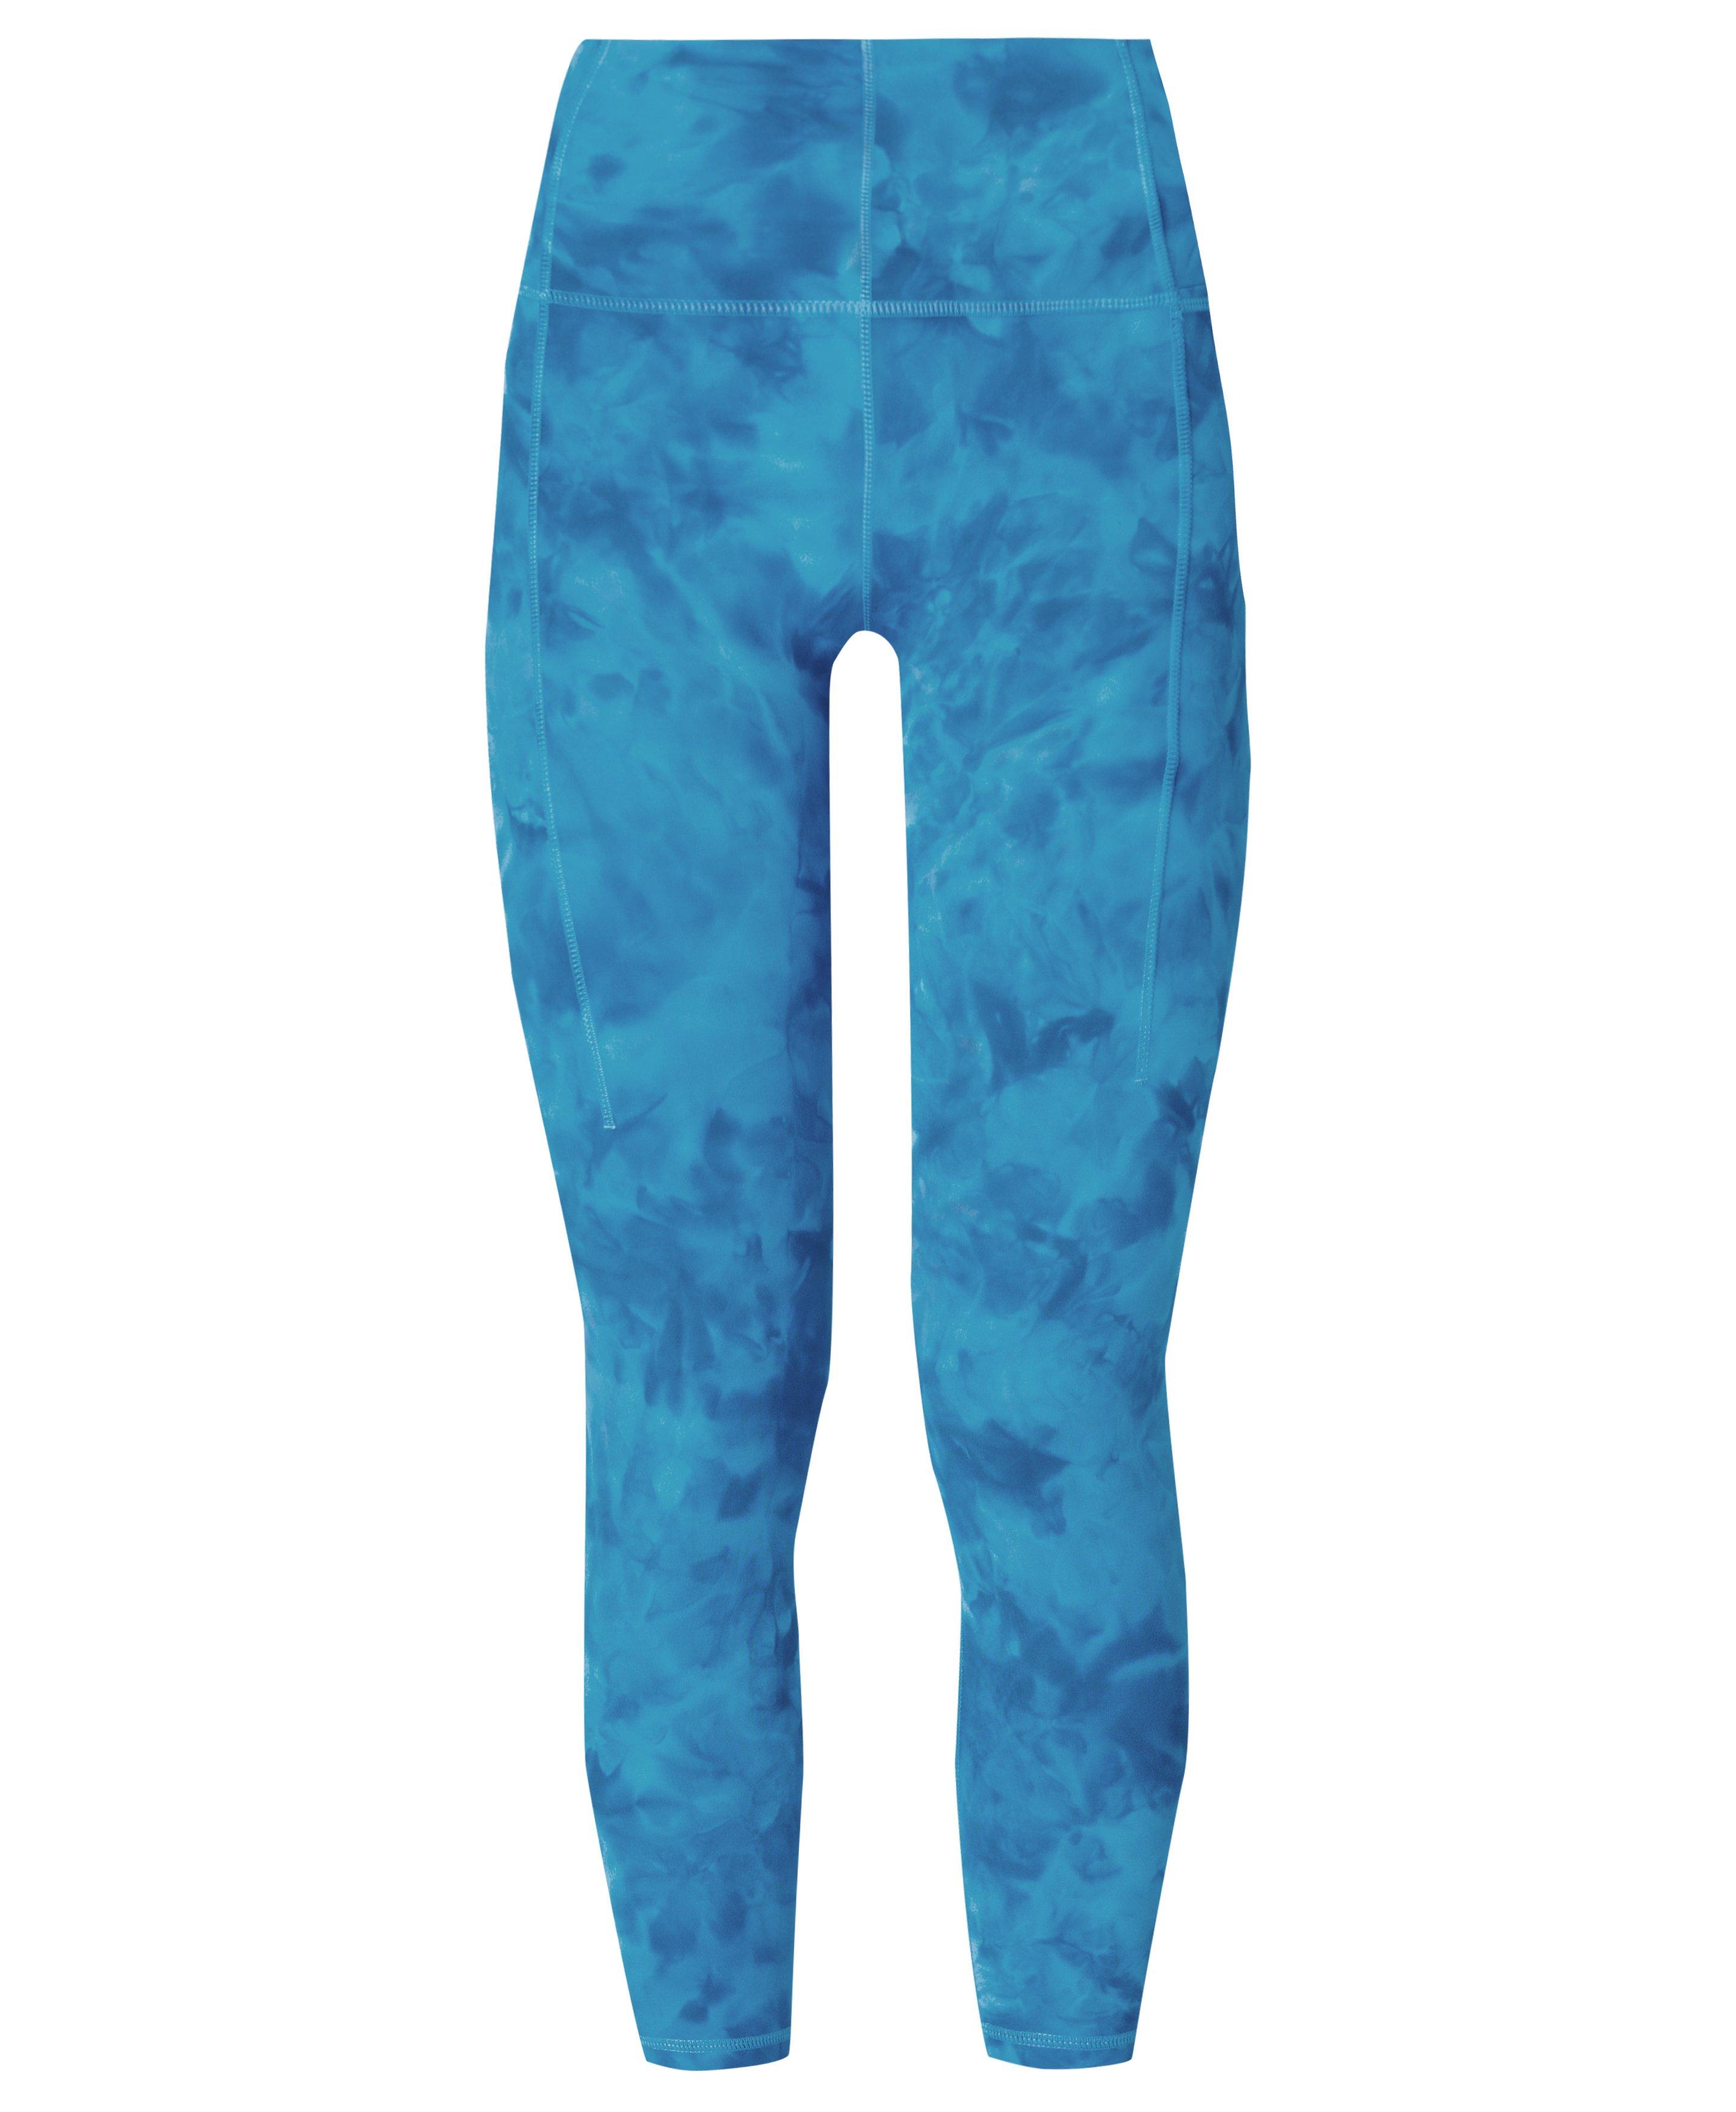 Tie Dye Leggings Yoga Pants Women Men soft and stretchy Light blue –  Sakoonee